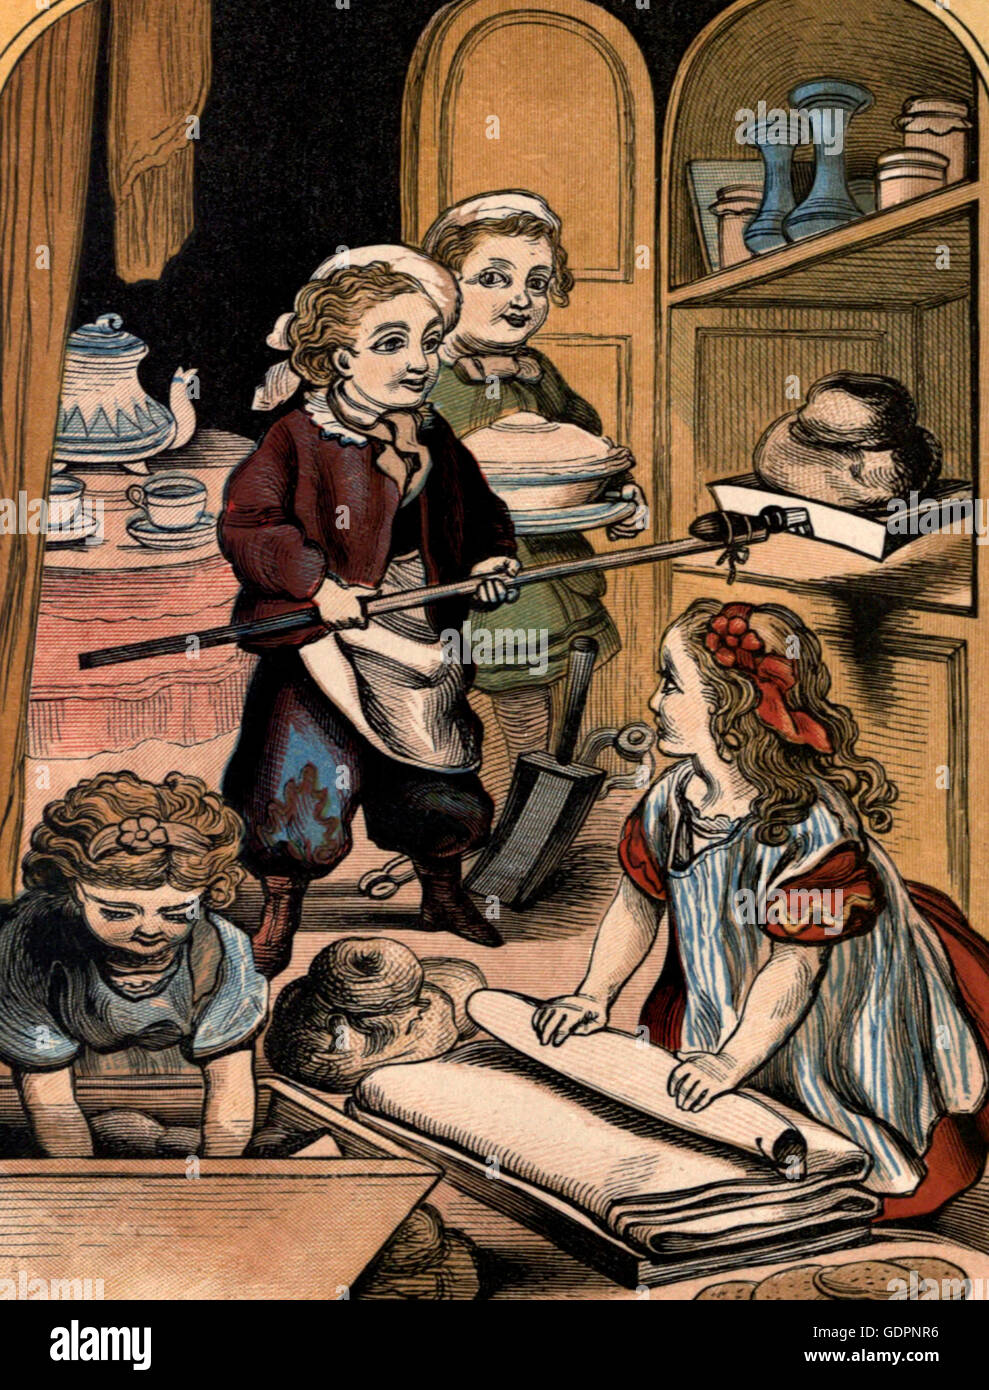 La pequeña panadería - época victoriana niños jugando al hornear Foto de stock